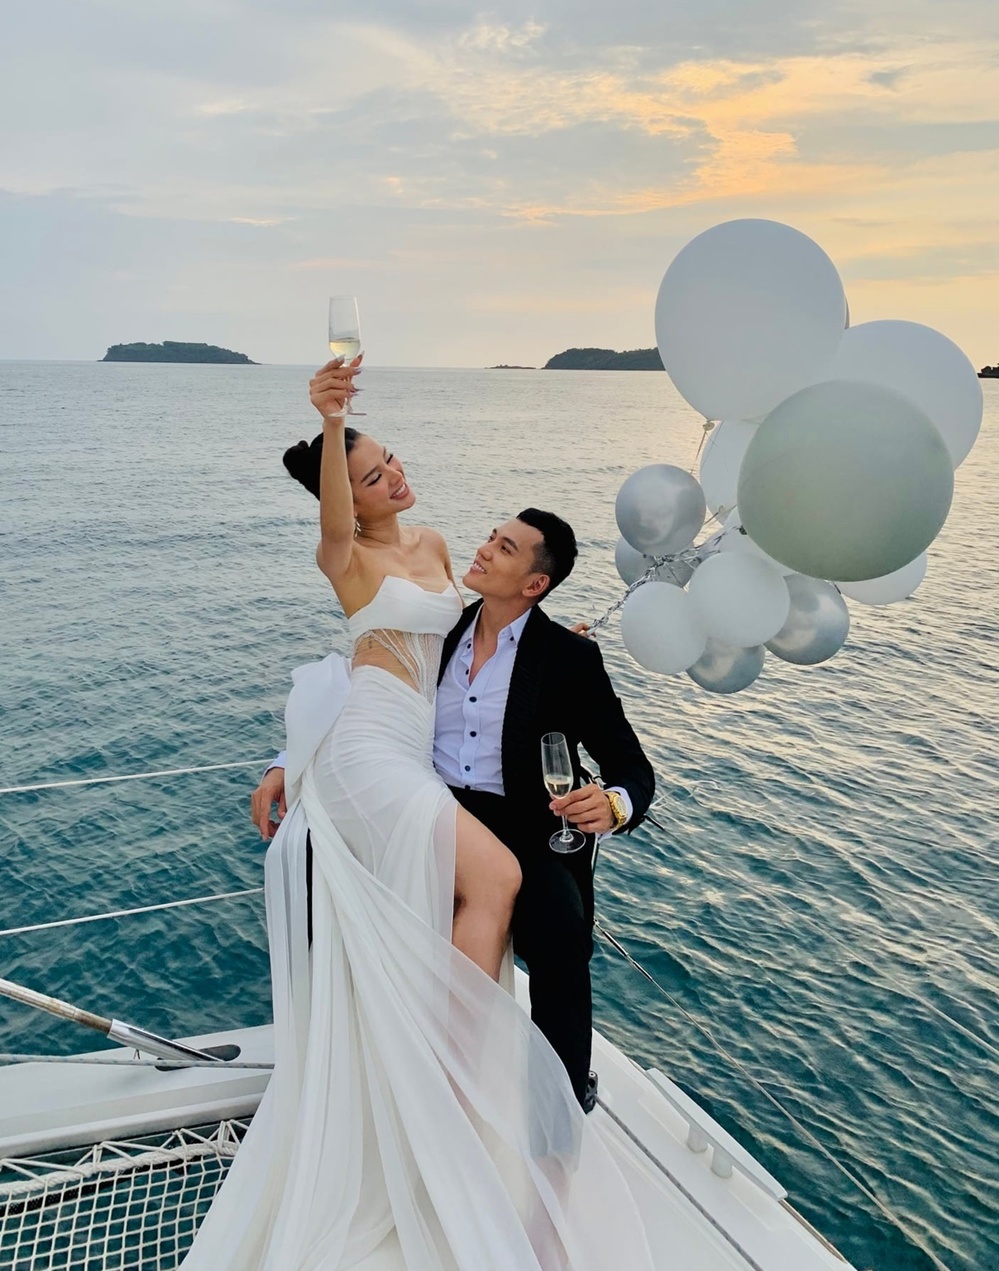  Cặp đôi chi khoảng nửa tỷ, gần 1 tuần cùng ê-kíp chụp ảnh cưới tại Phú Quốc. - Tin sao Viet - Tin tuc sao Viet - Scandal sao Viet - Tin tuc cua Sao - Tin cua Sao